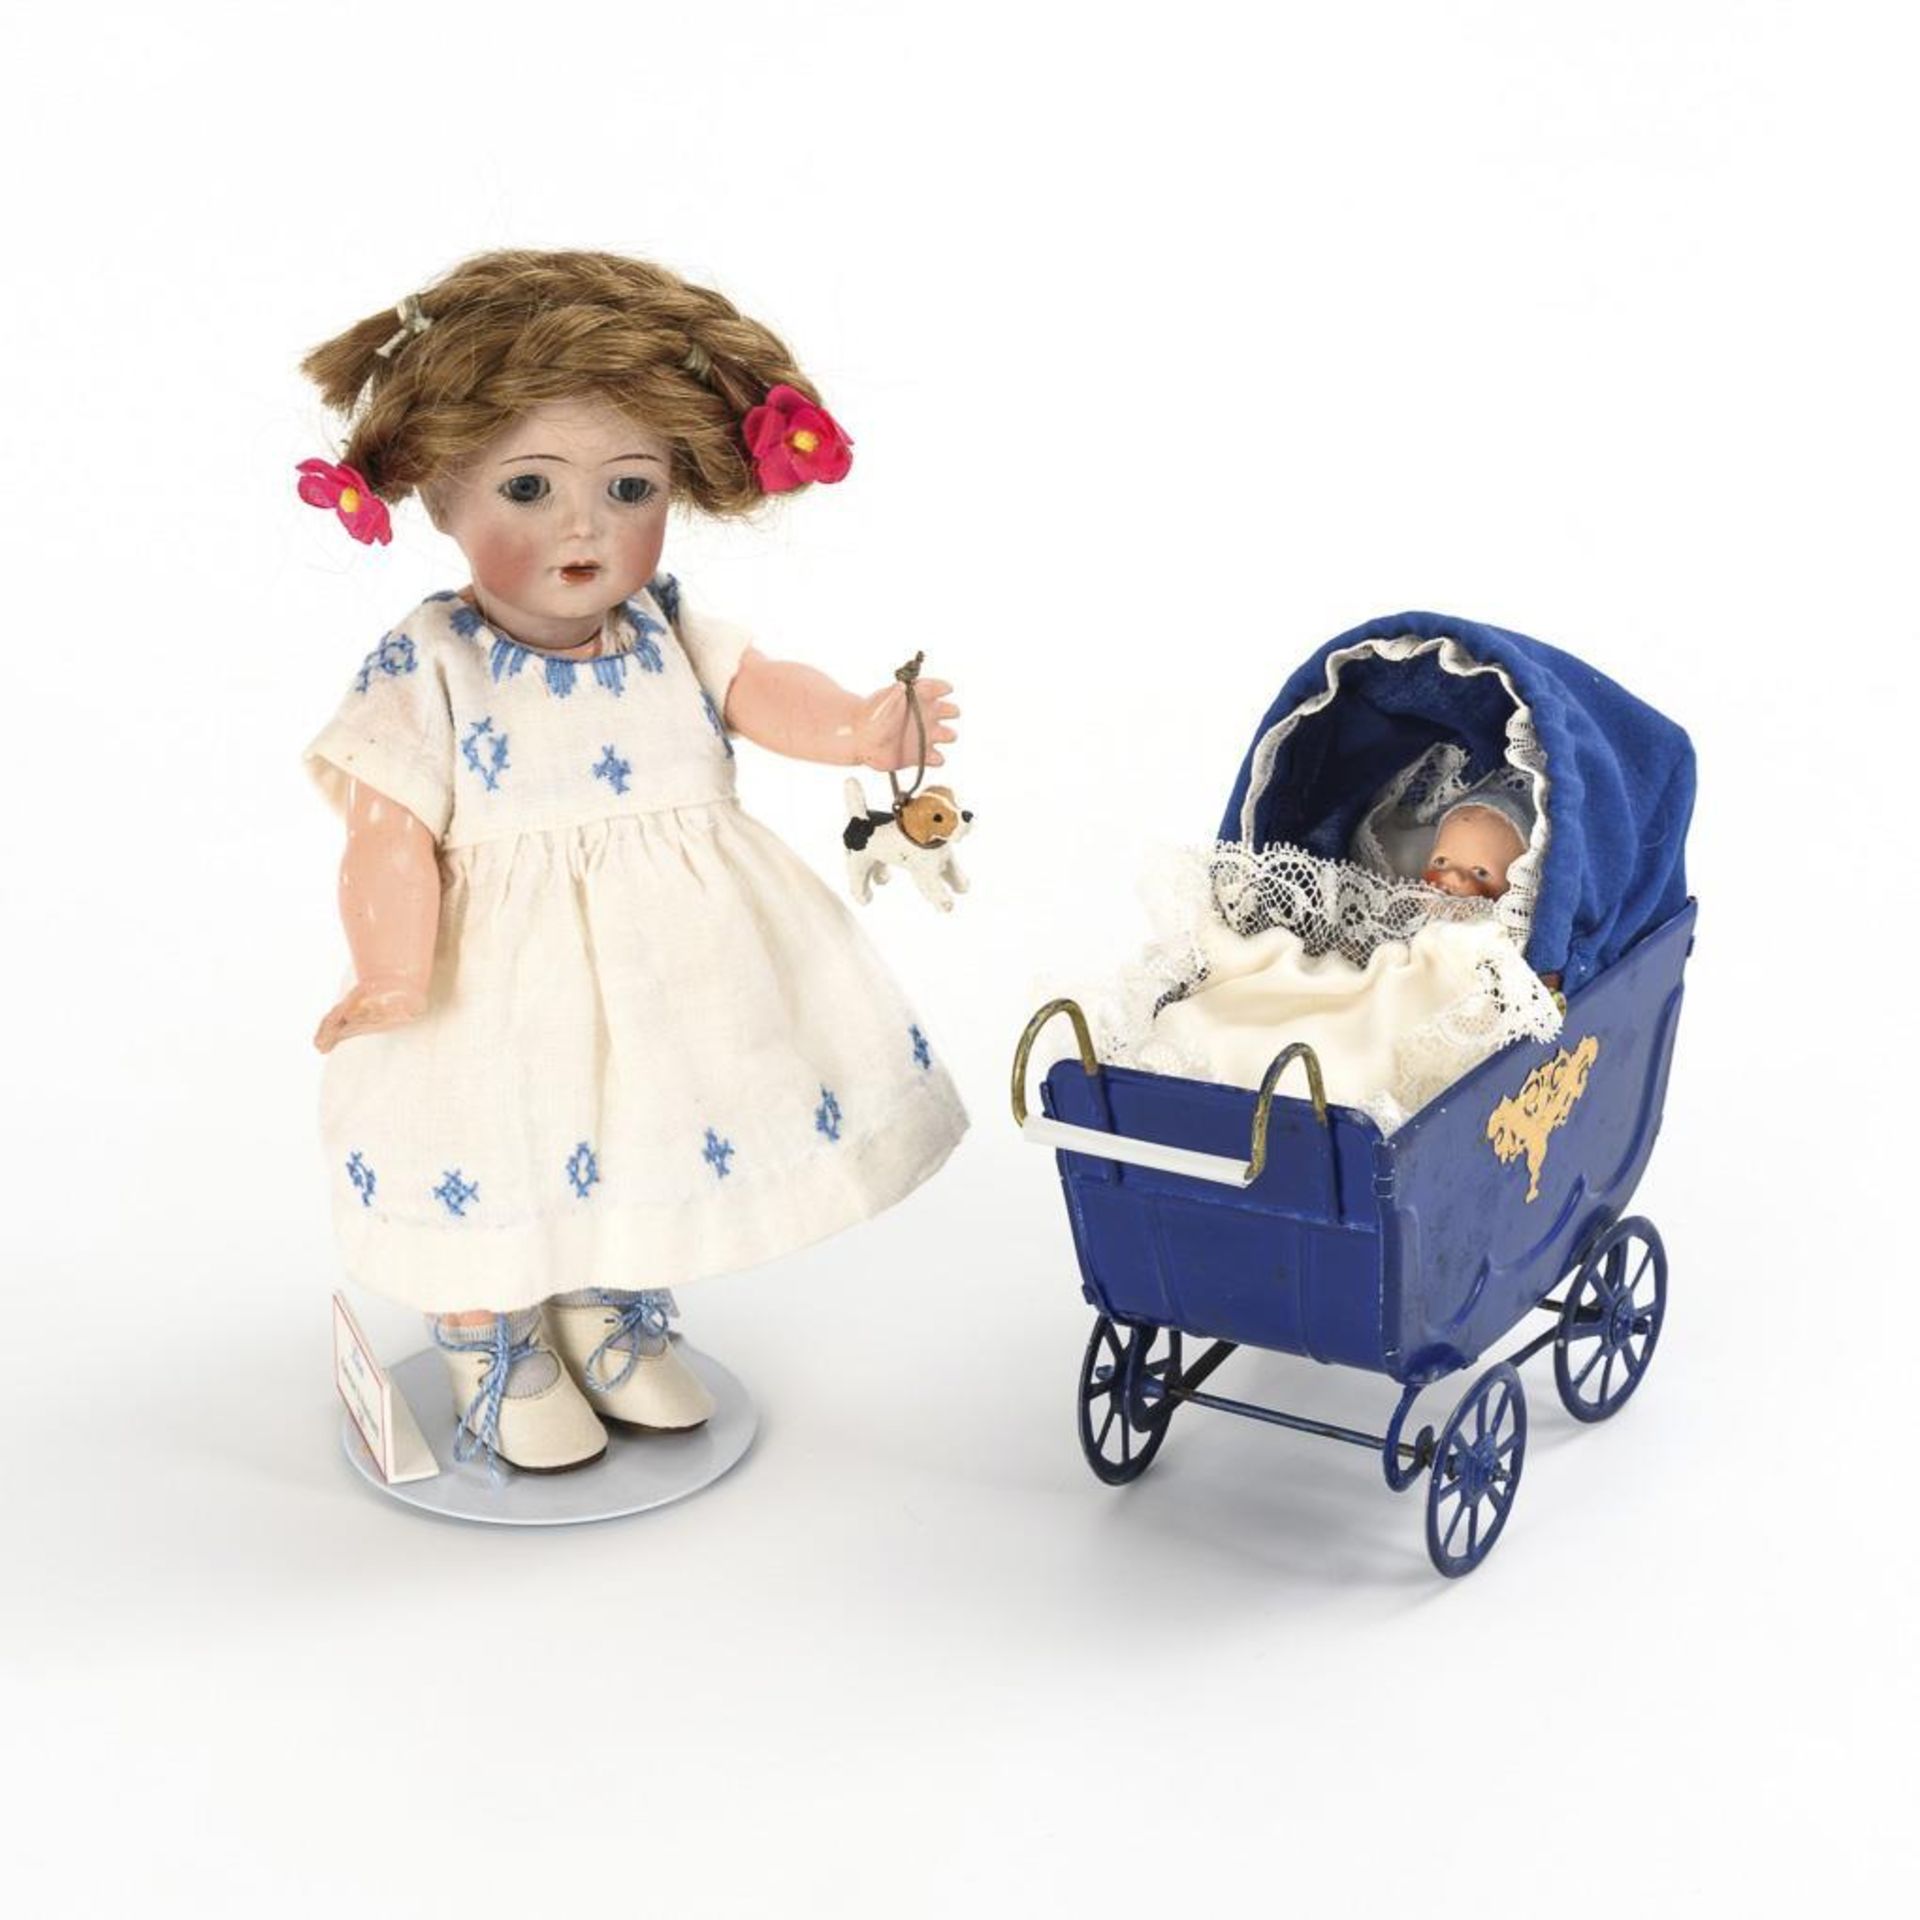 Kleines Charakterpüppchen "Lisa" mit Blech-Puppenwagen.  Kämmer & Reinhardt.